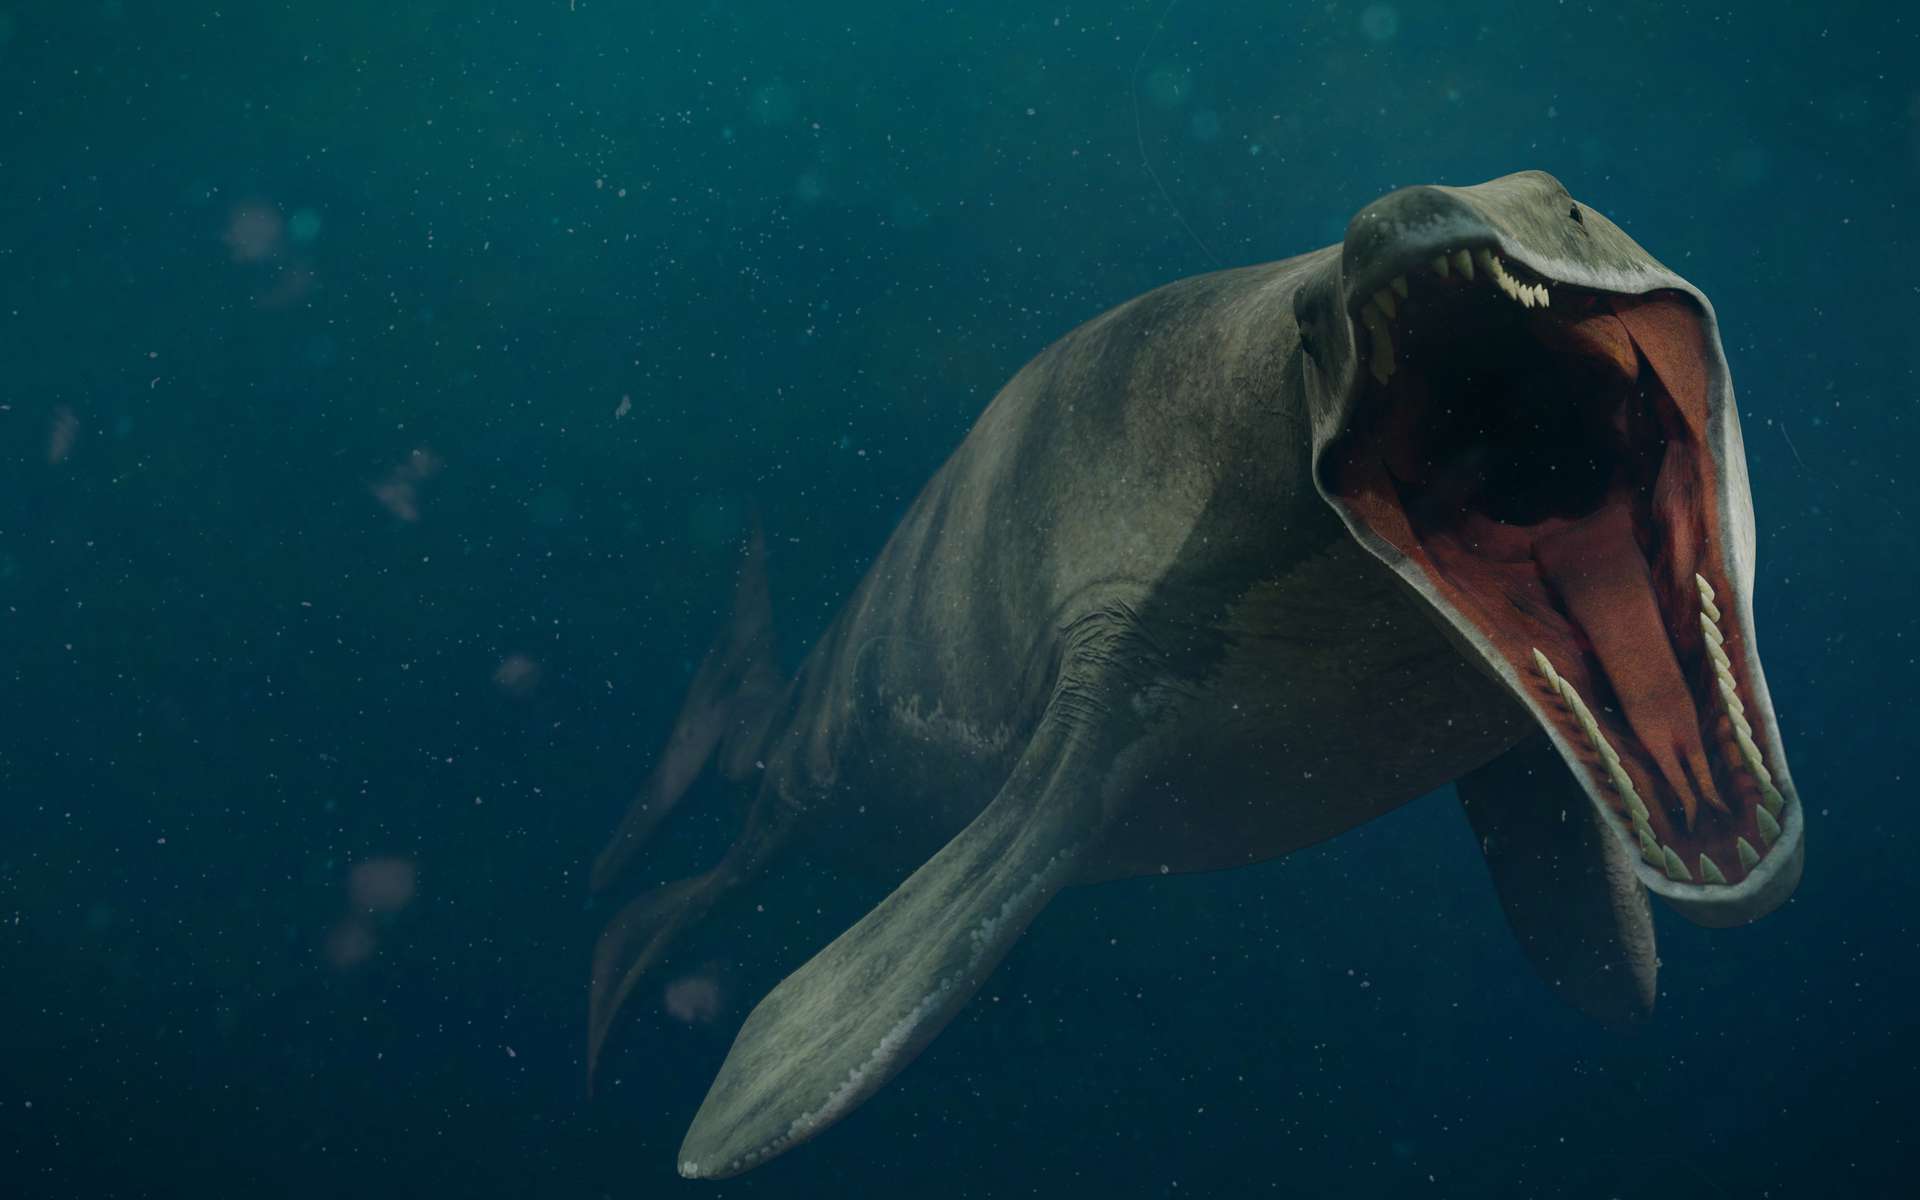 Ce lézard géant semait la terreur dans l'océan il y a 66 millions d'années !